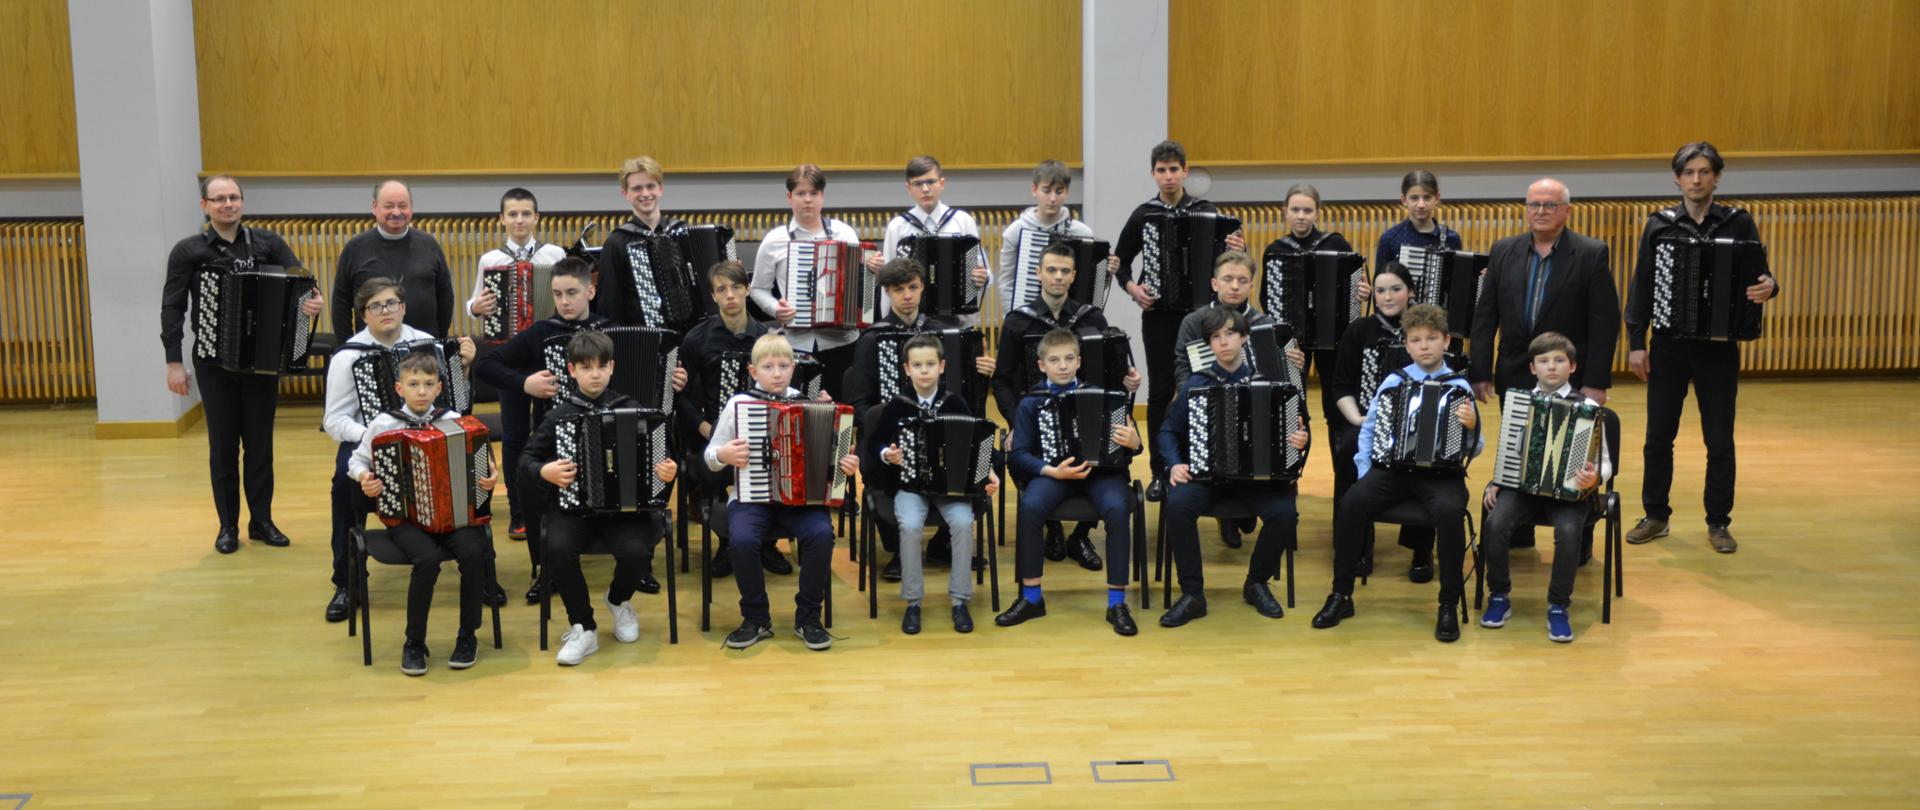 Uczniowie i pedagodzy orkiestry trzymający akordeony ustawieni w trzech rzędach.